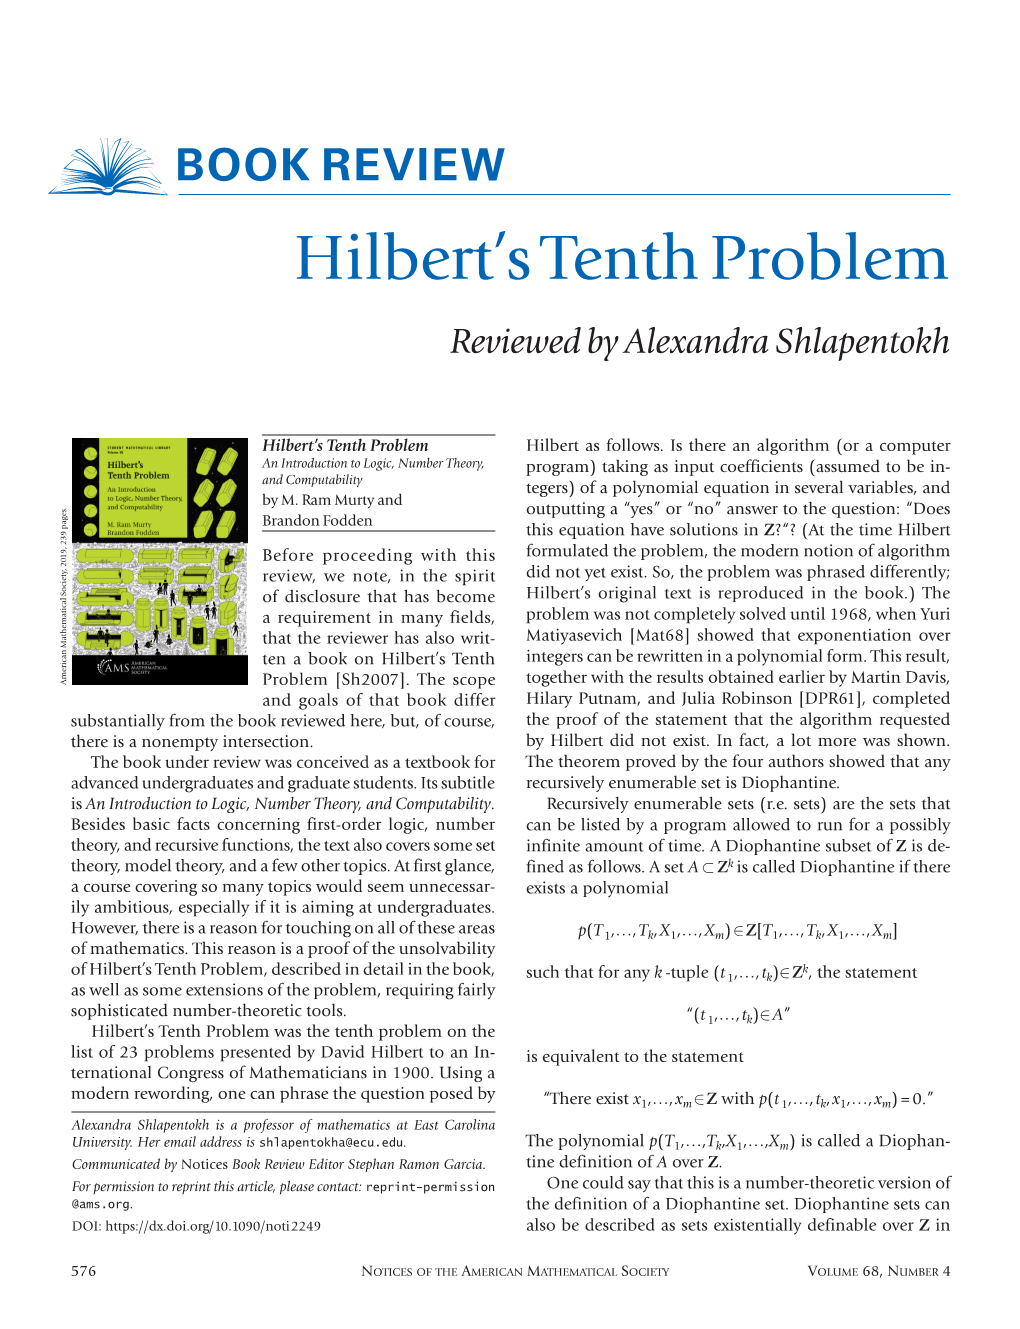 Hilbert's Tenth Problem, J